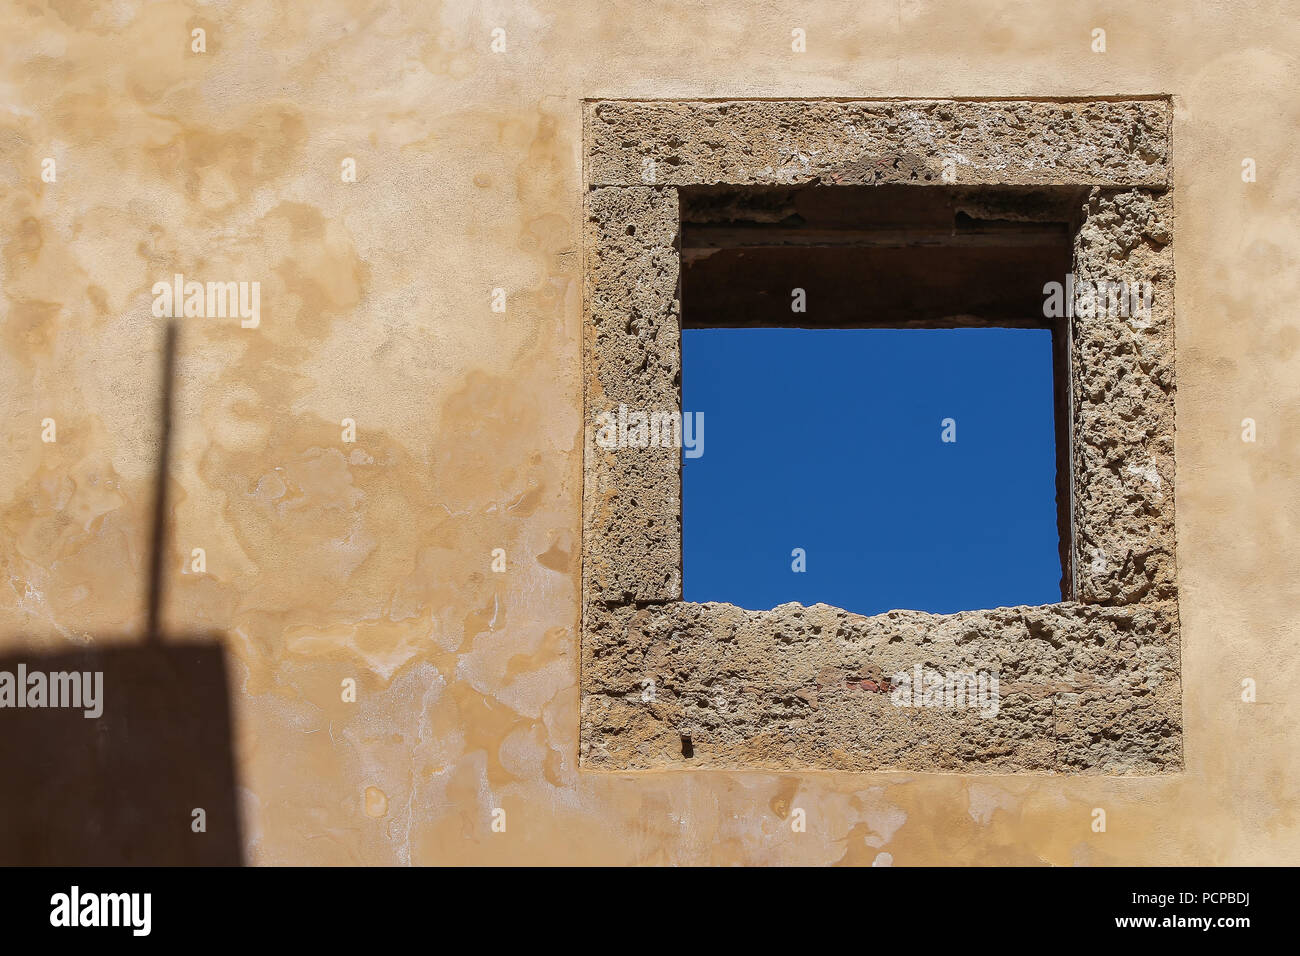 Mur avec une structure et une ombre façade vieillies. La place traditionnelle fenêtre avec un bâti en pierre. Ciel bleu. El Jadida, Maroc. Banque D'Images